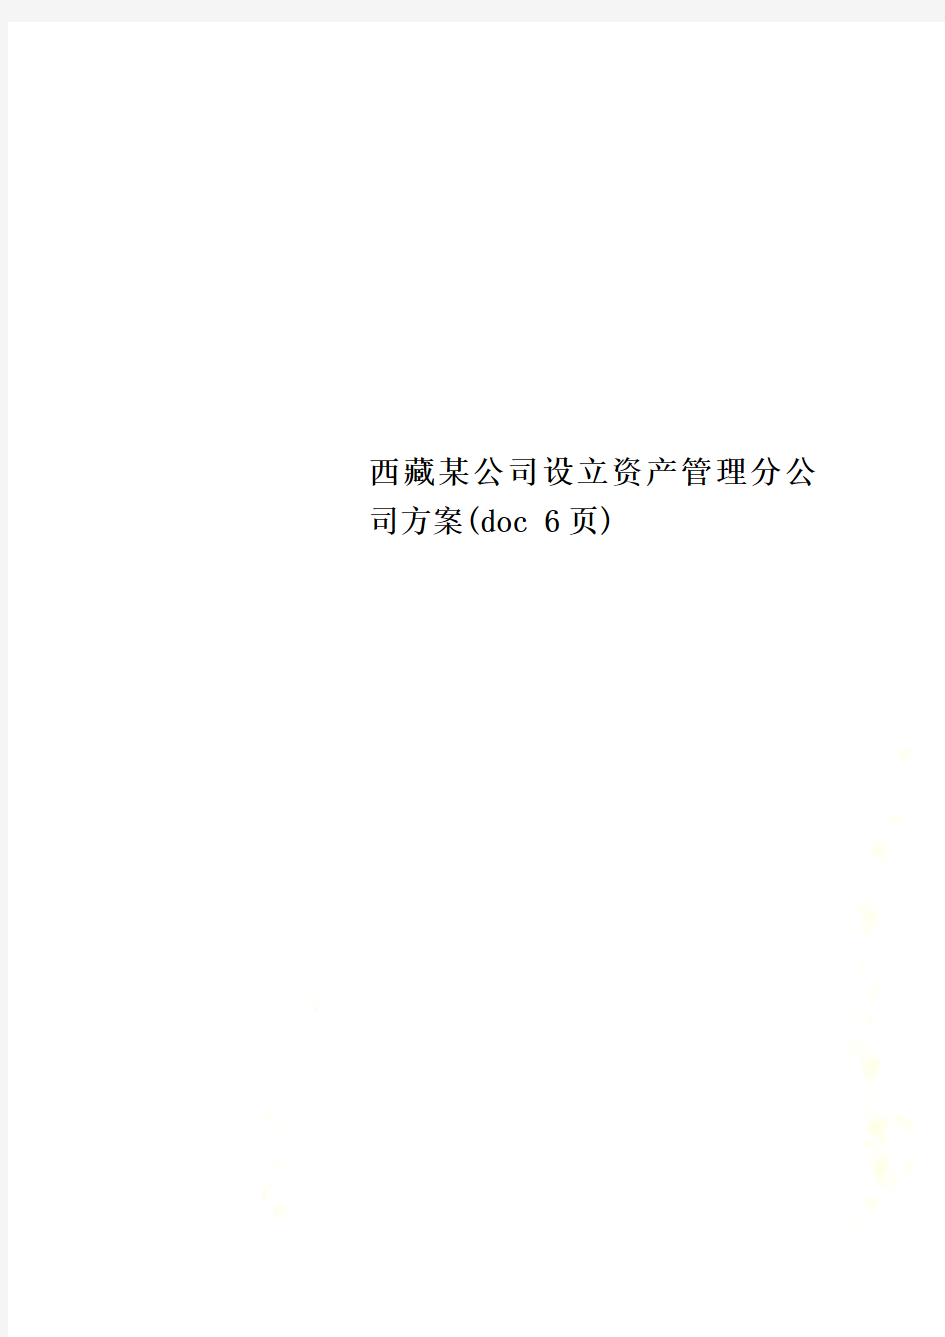 西藏某公司设立资产管理分公司方案(doc 6页)